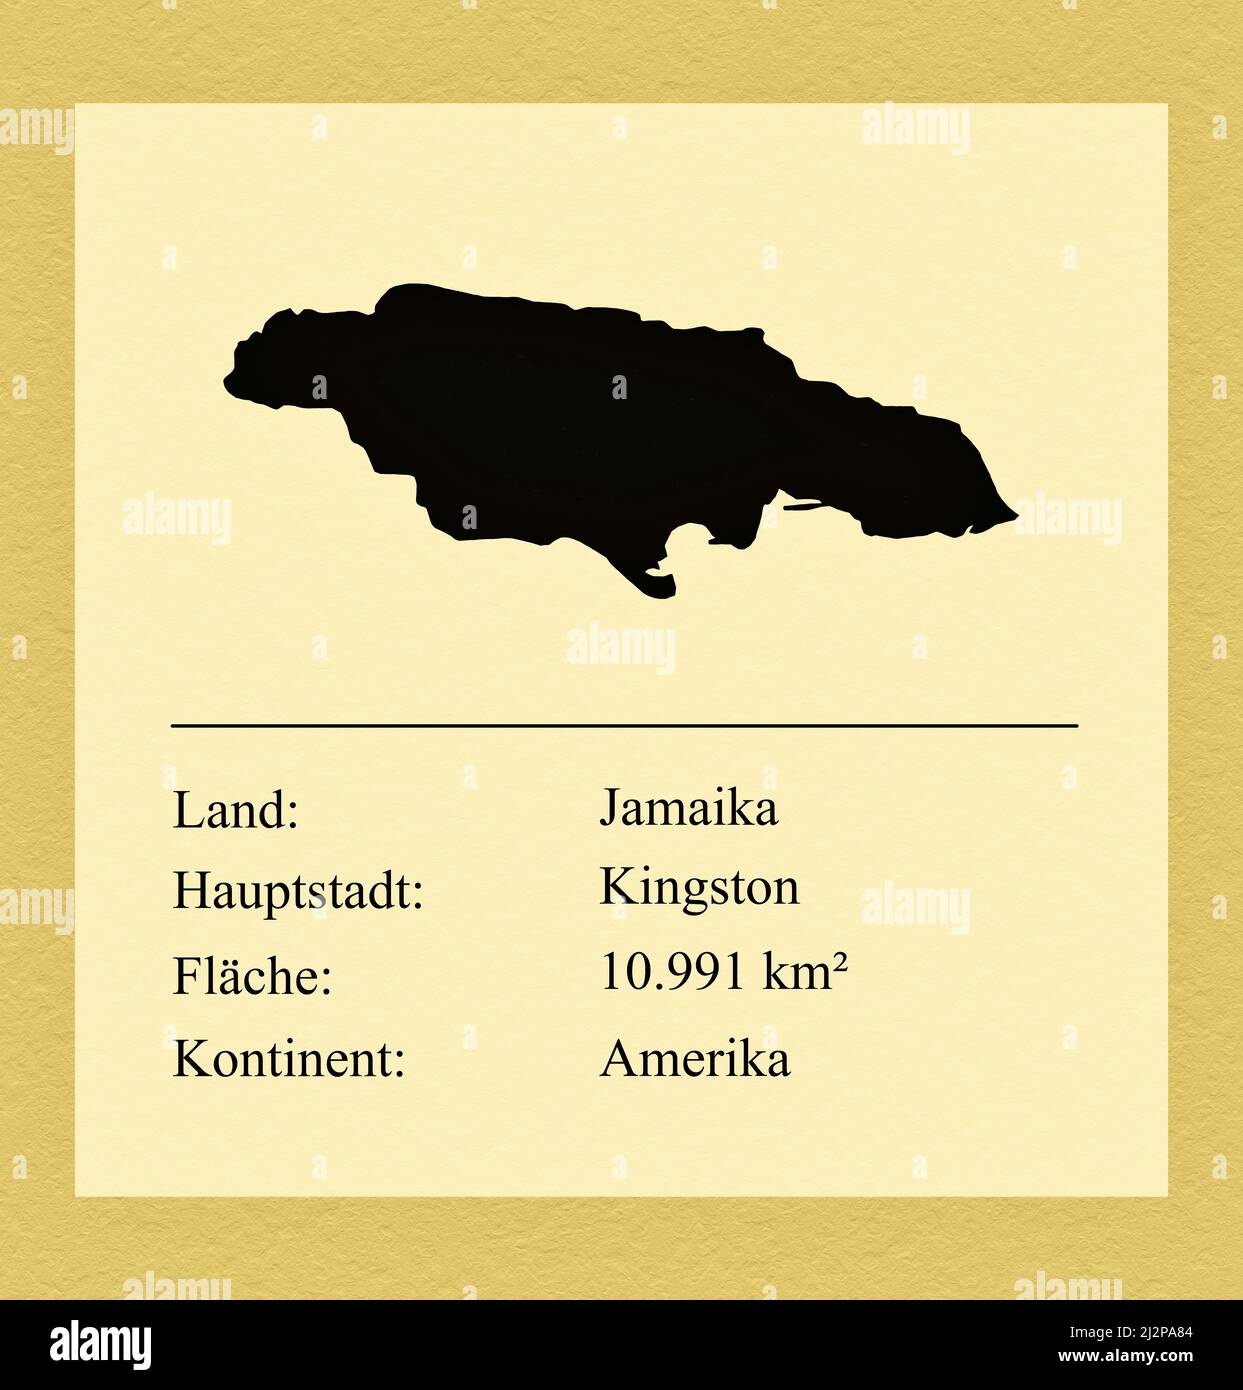 Umrisse des Landes Jamaika, darunter ein kleiner Steckbrief mit Ländernamen, Hauptstadt, Fläche und Kontinent Foto Stock